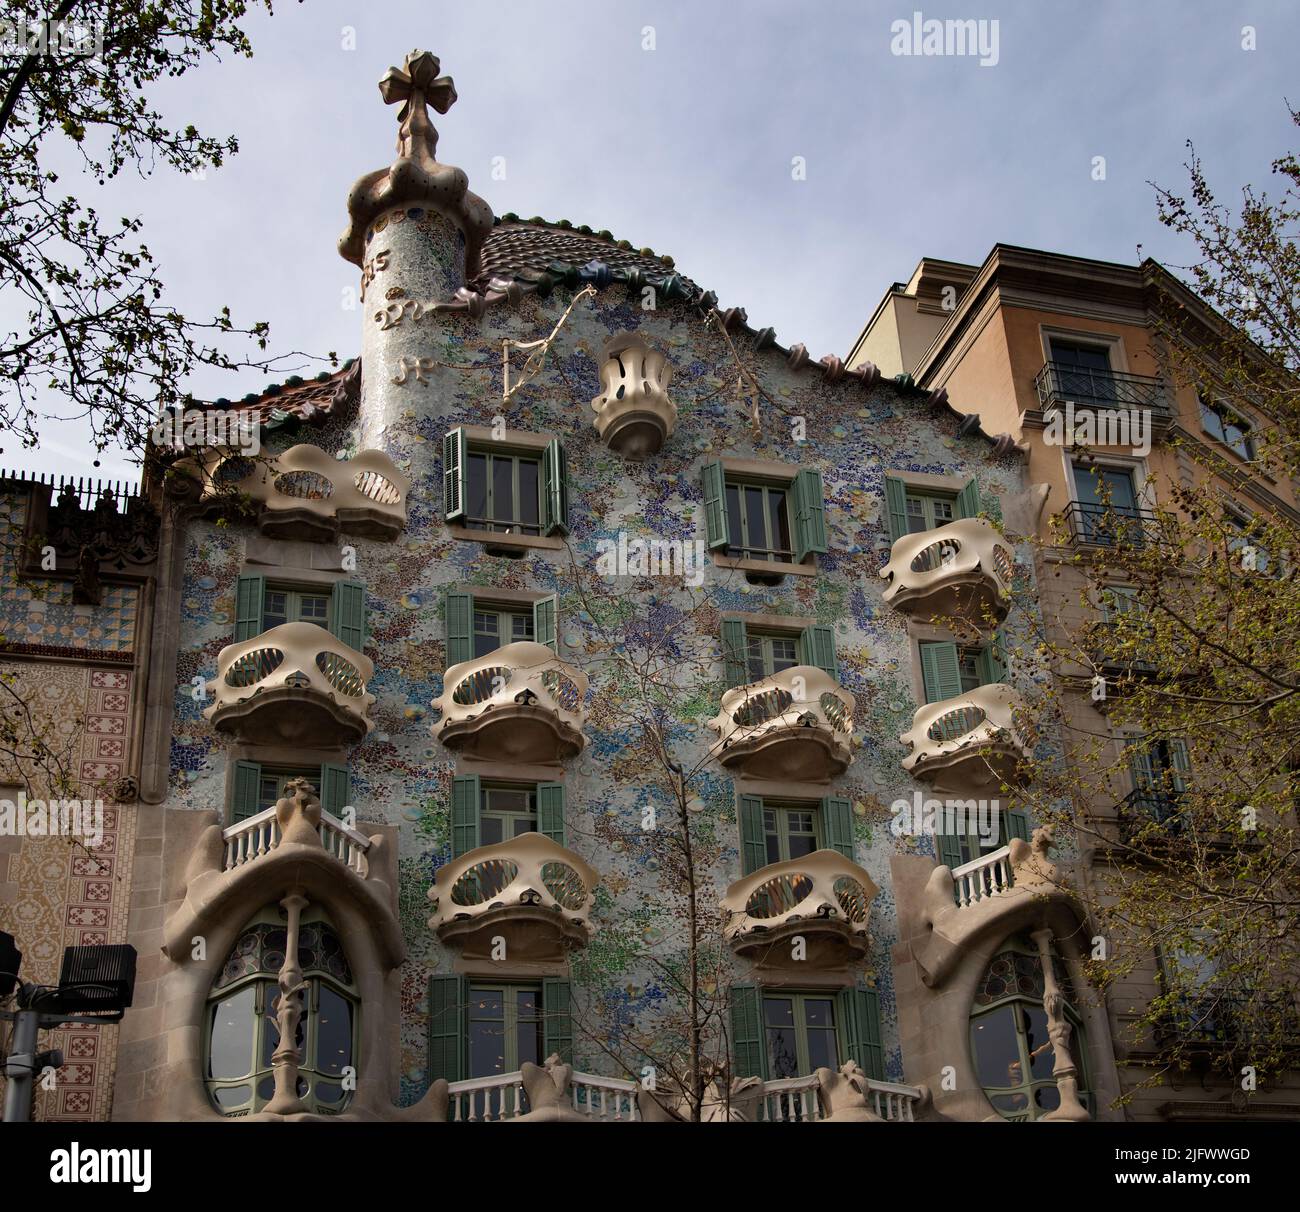 Casa Batlló (Antoni Gaudí, 1904, local name Casa dels ossos, House of Bones), Barcelona, Catalunya, Spain Stock Photo